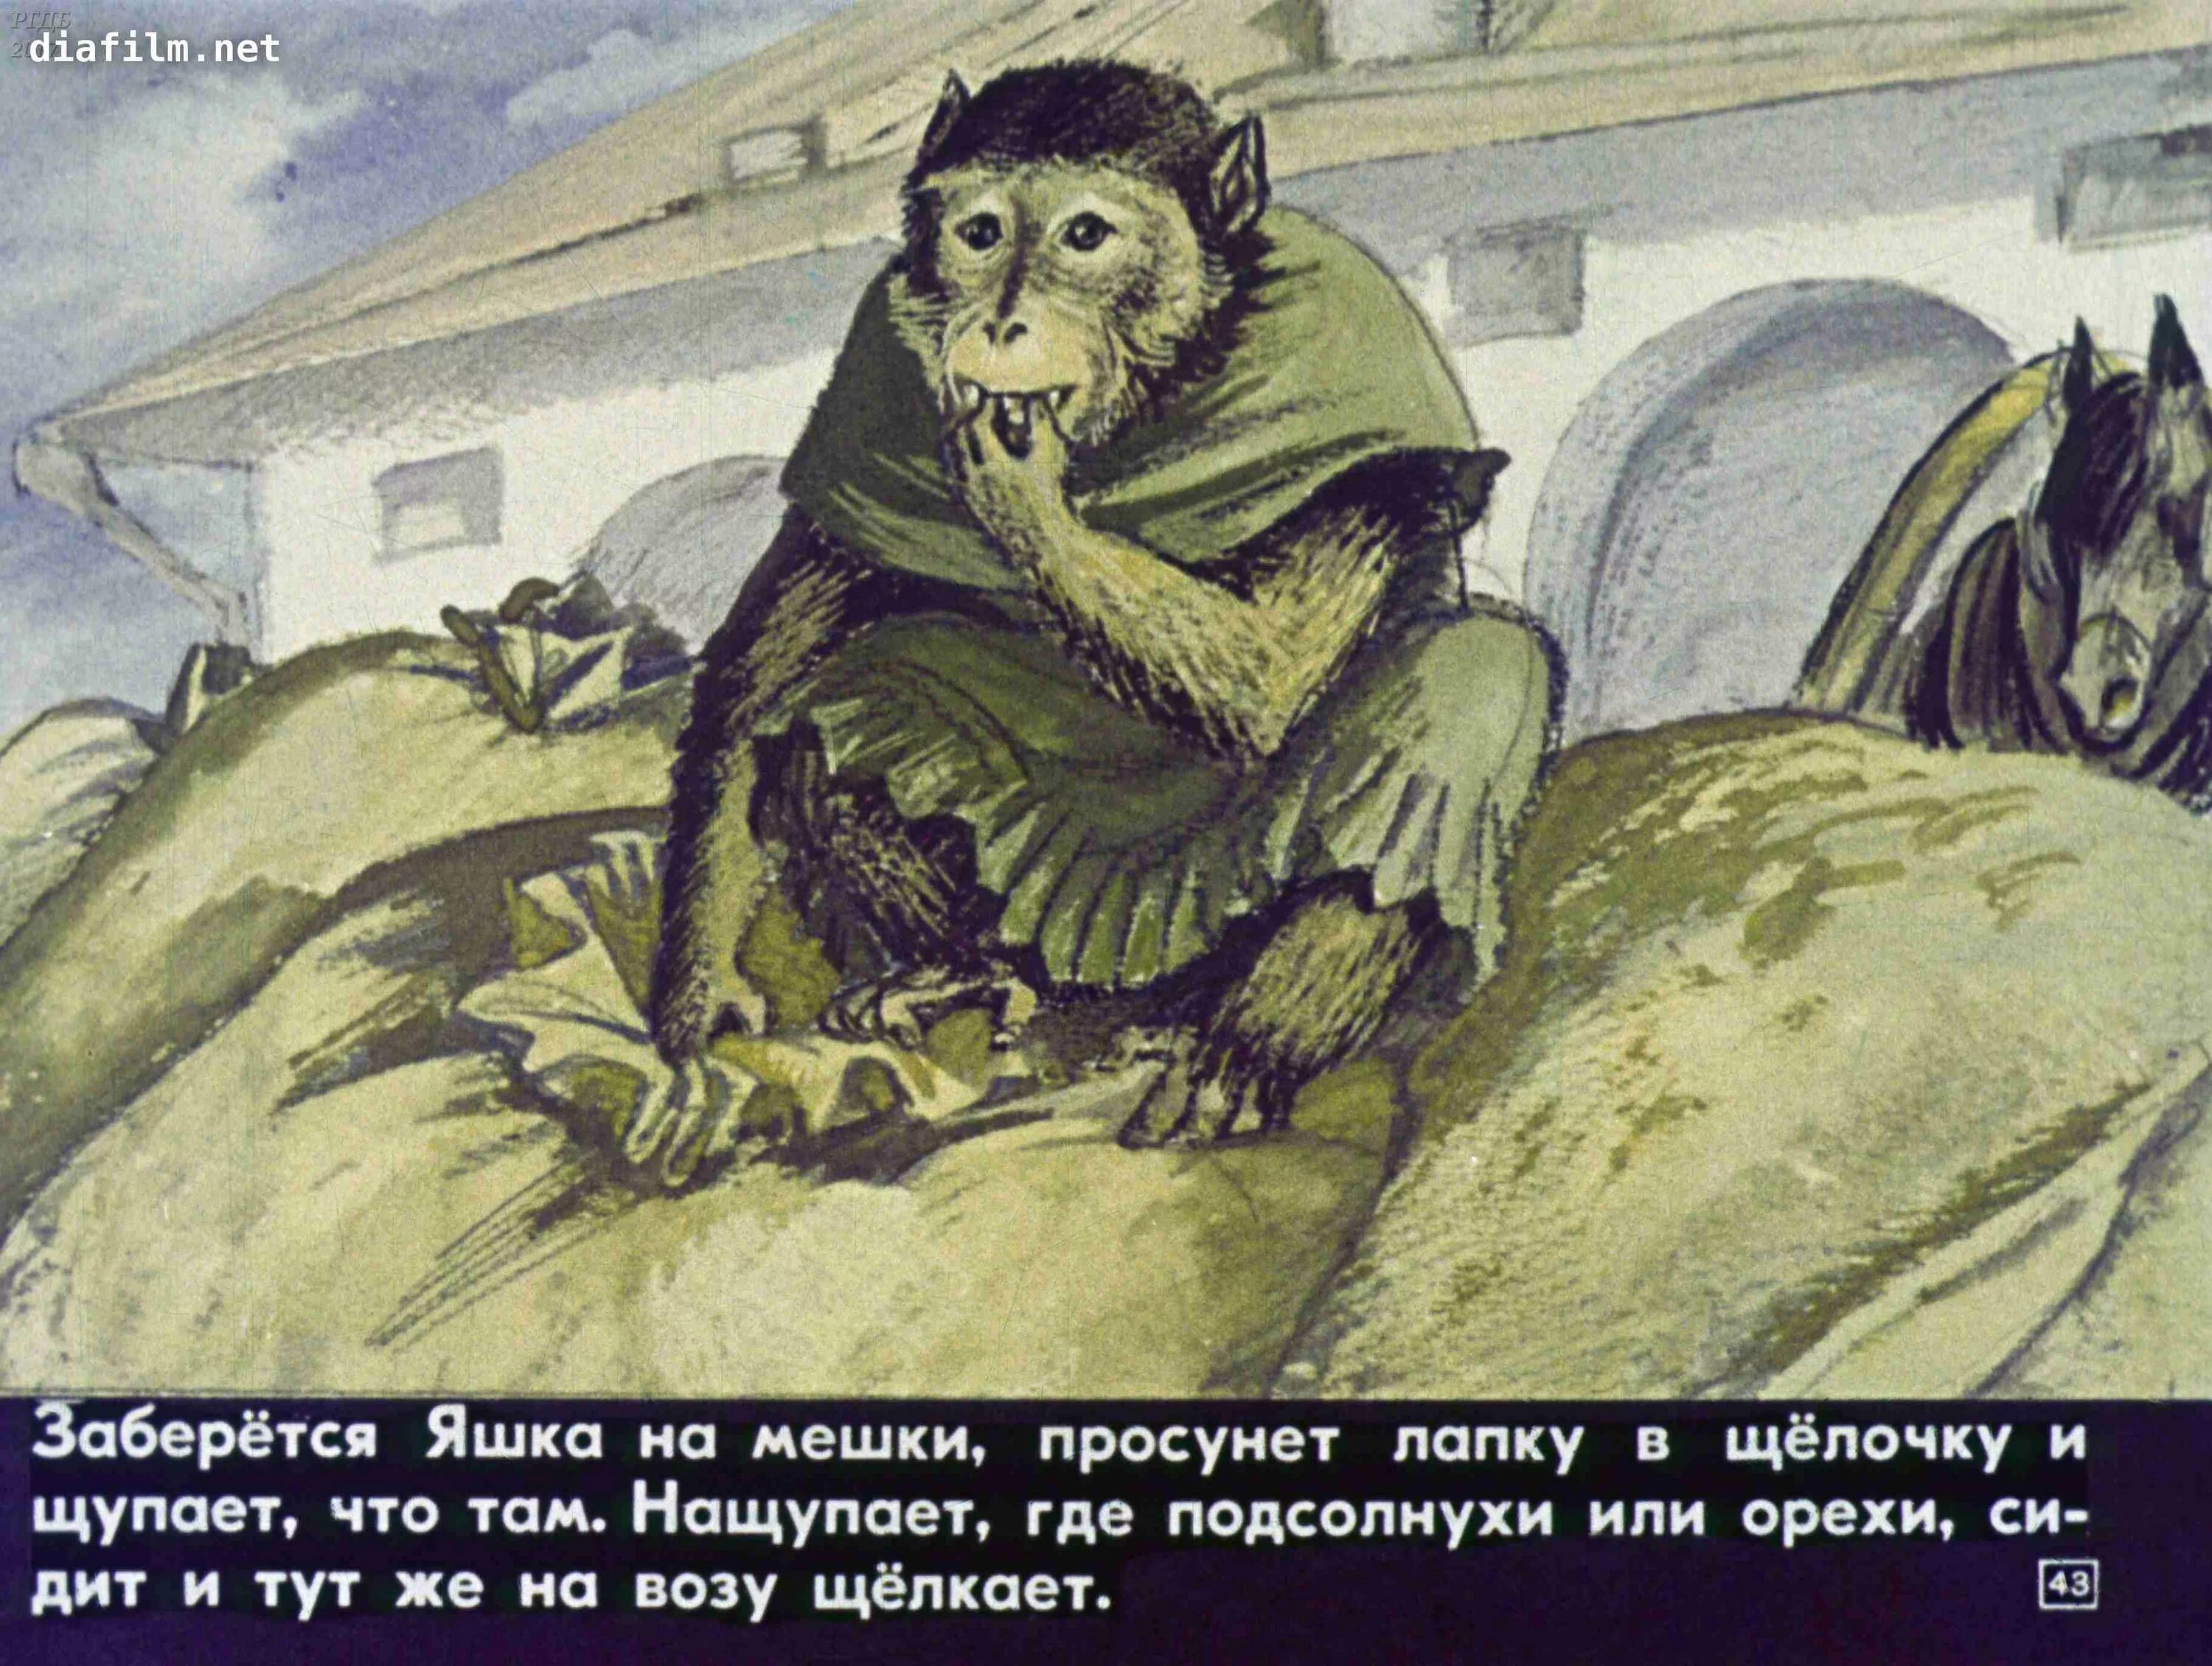 Иллюстрация к произведению б Житкова про обезьянку. Б Житков про обезьянку.